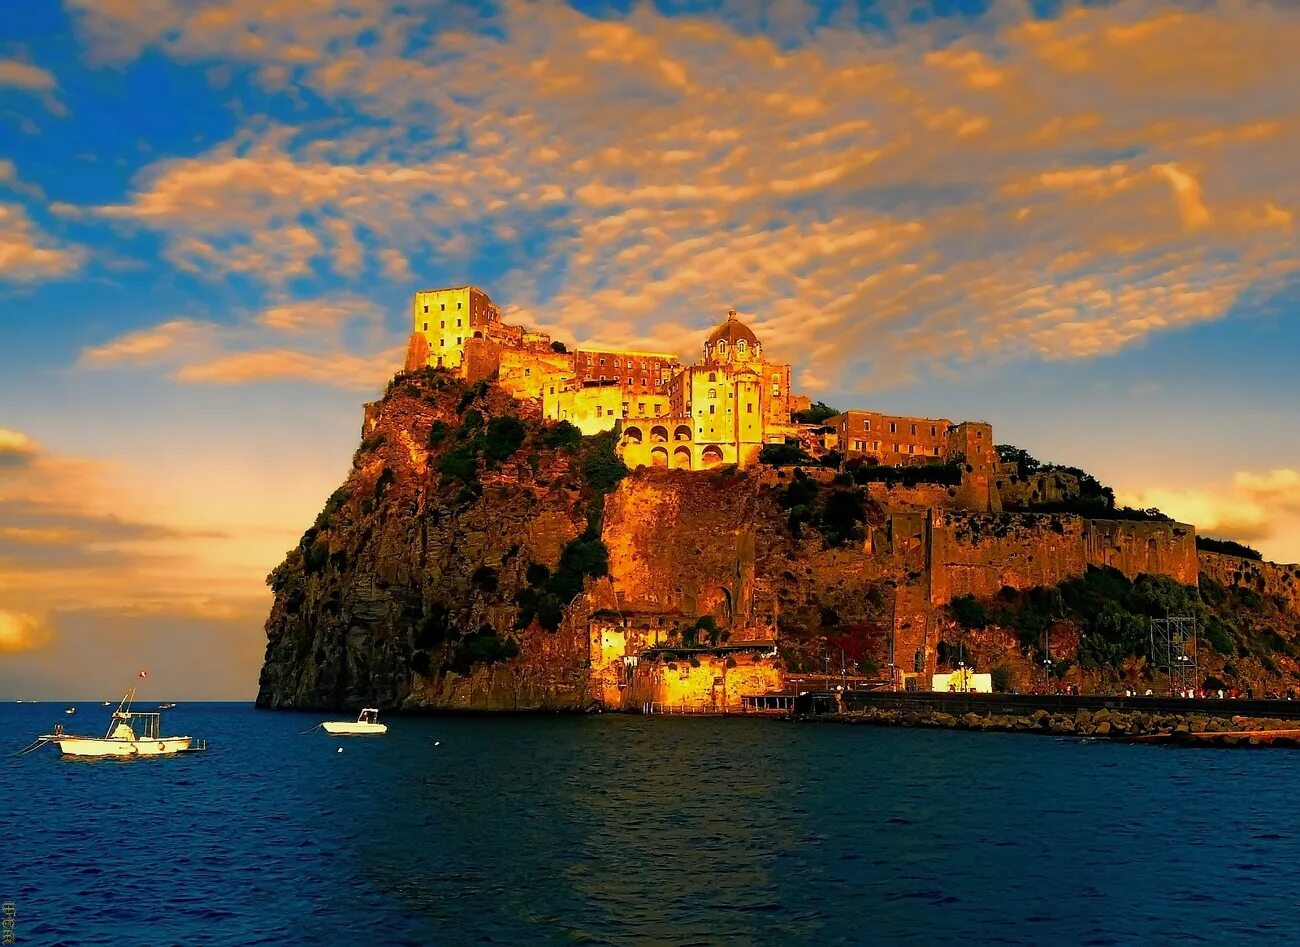 Большой итальянский остров. Арагонский замок остров Искья. Арагонский замок, Искья, Италия. Арагонский замок (Реджо-ди-Калабрия). Италия Неаполь остров Искья.